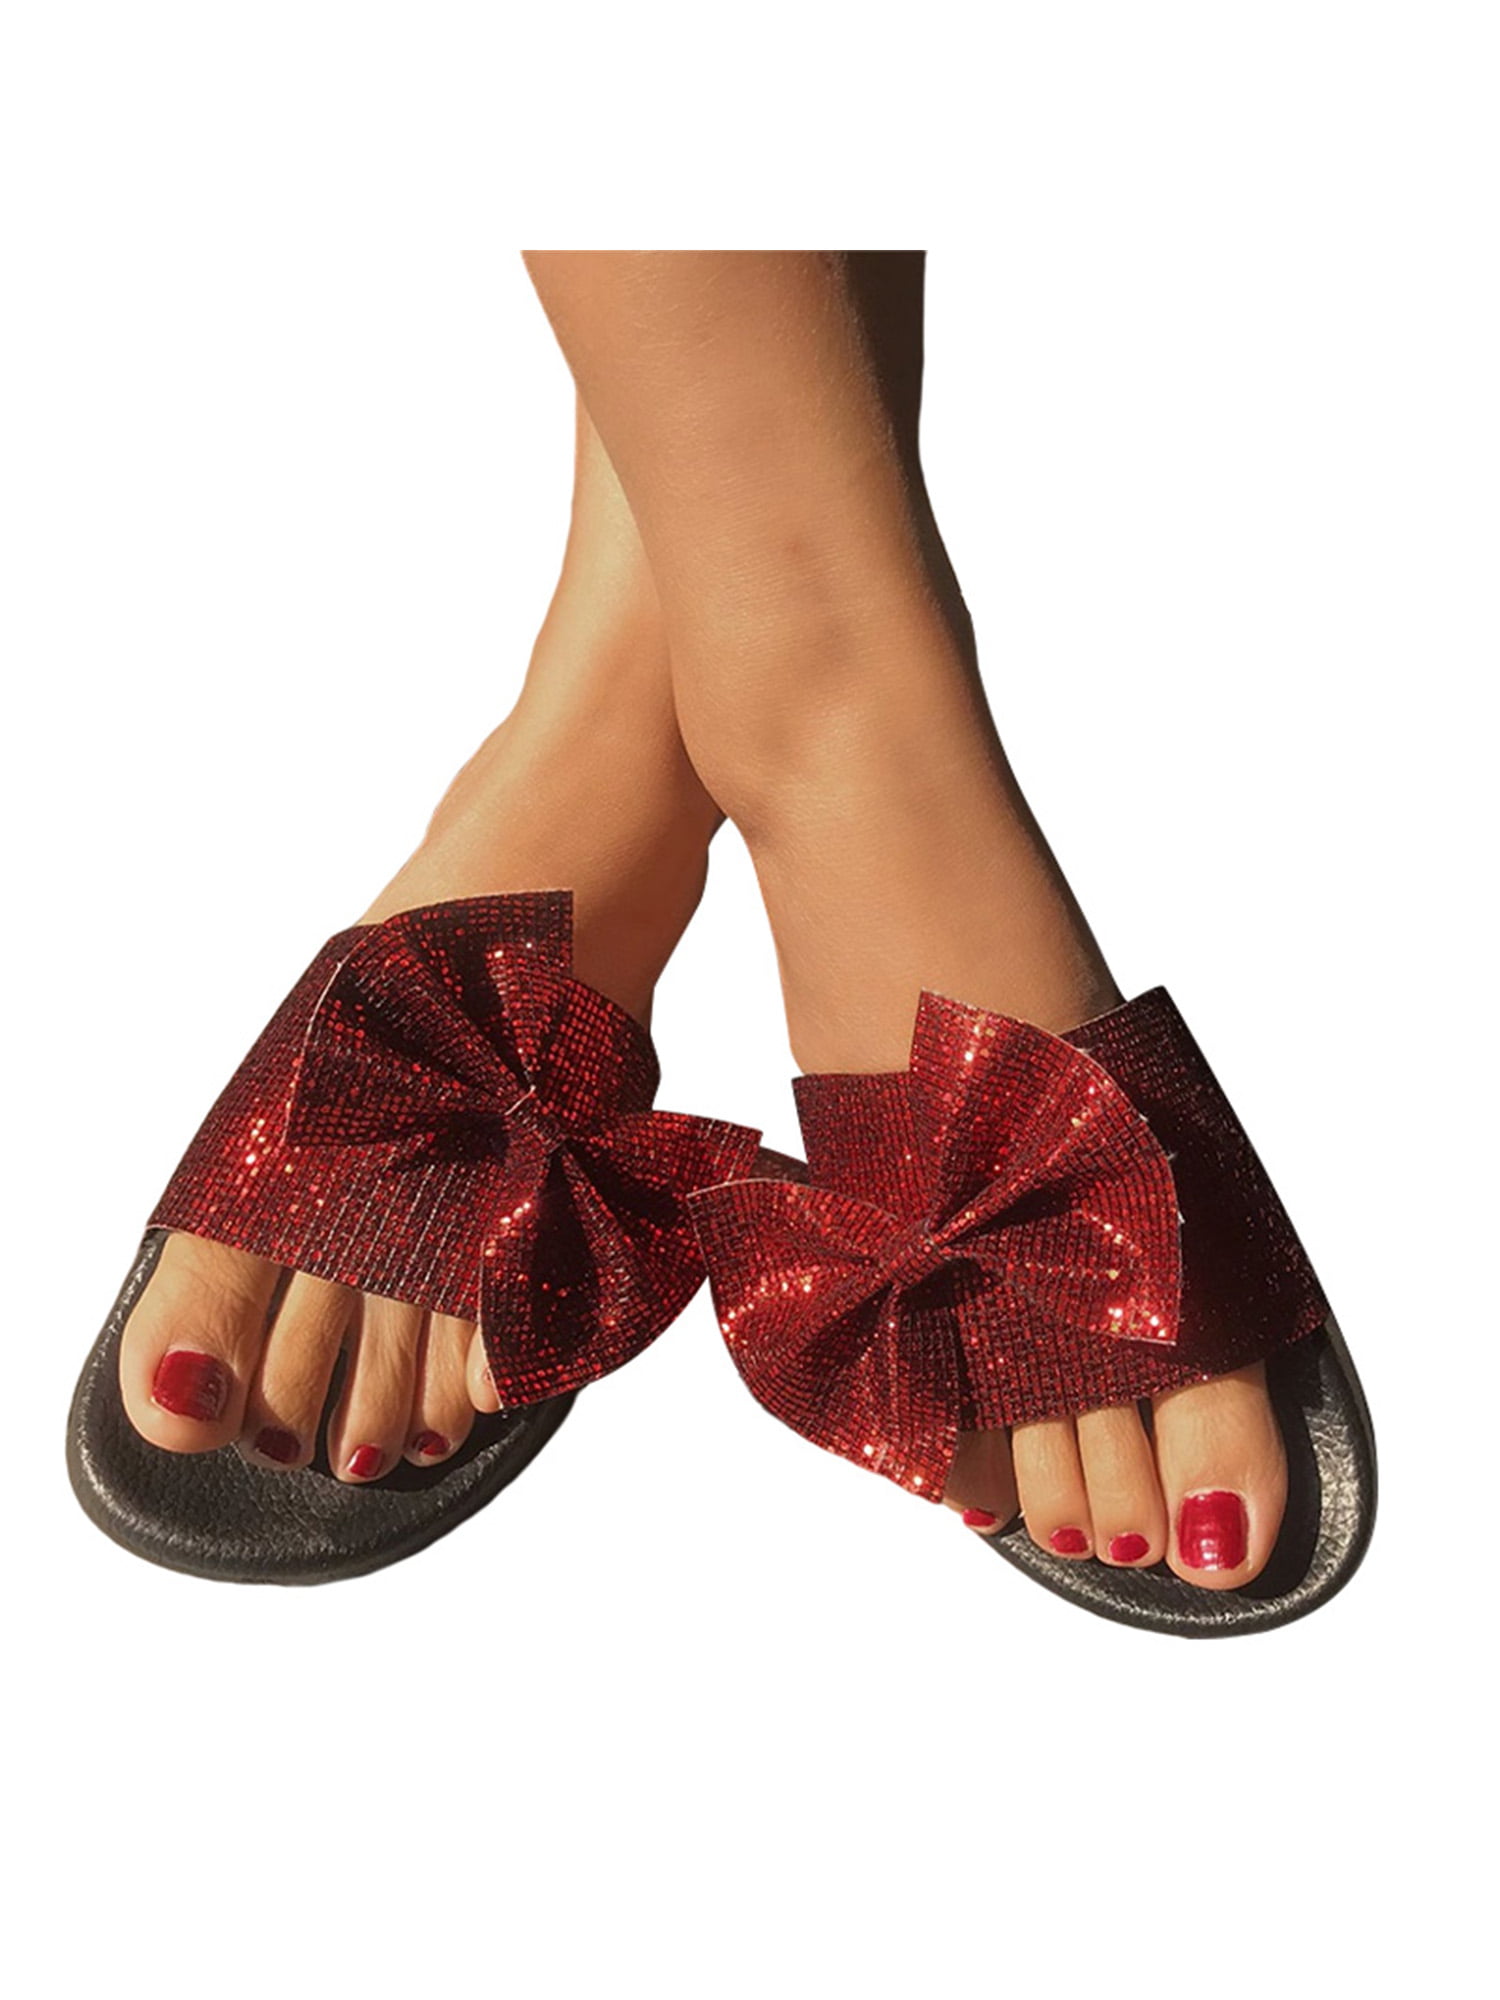 Women's Kitten Mid Heel Casual Slip On Sliper Open Toe Bowknot Sandals New Shoes